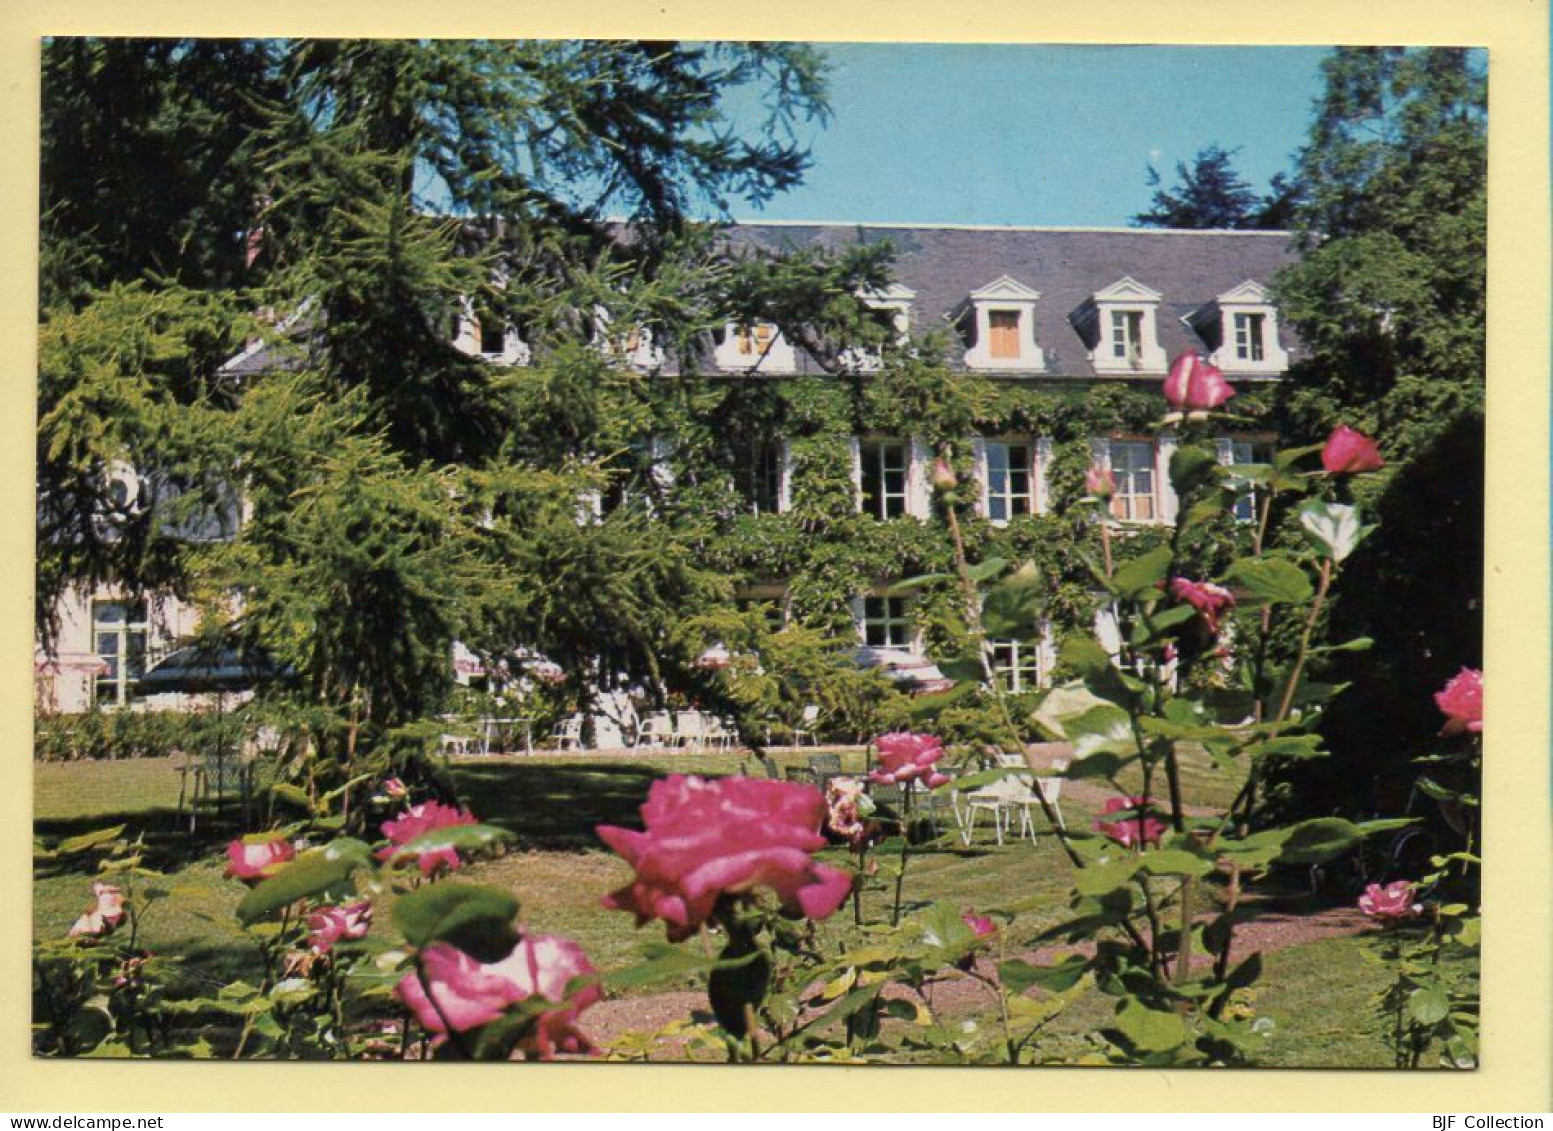 62. HUBY ST LEU / HESDIN – Le Manoir De La Canche / Maison De Vacances A.V.R.R. Primatour (voir Scan Recto/verso) - Hesdin